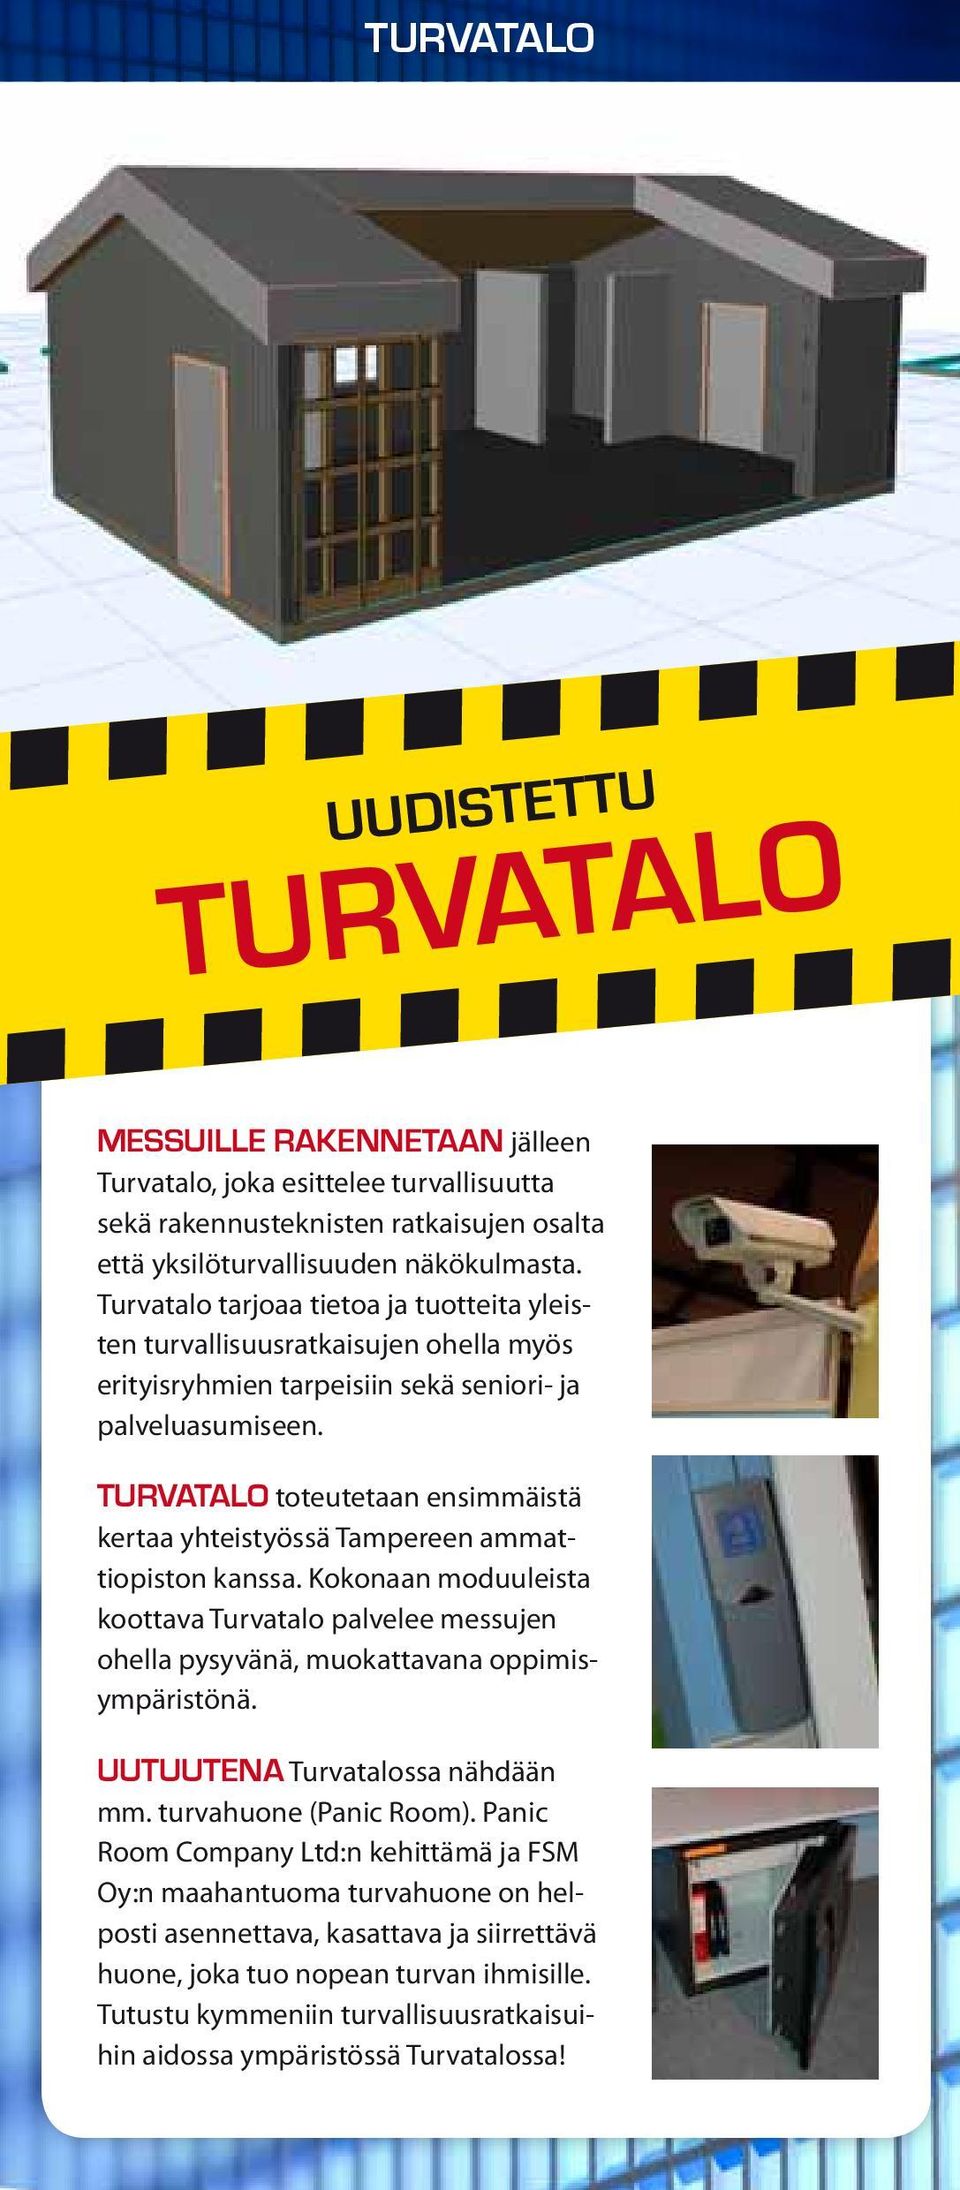 turvatalo toteutetaan ensimmäistä kertaa yhteistyössä Tampereen ammattiopiston kanssa. Kokonaan moduuleista koottava Turvatalo palvelee messujen ohella pysyvänä, muokattavana oppimisympäristönä.